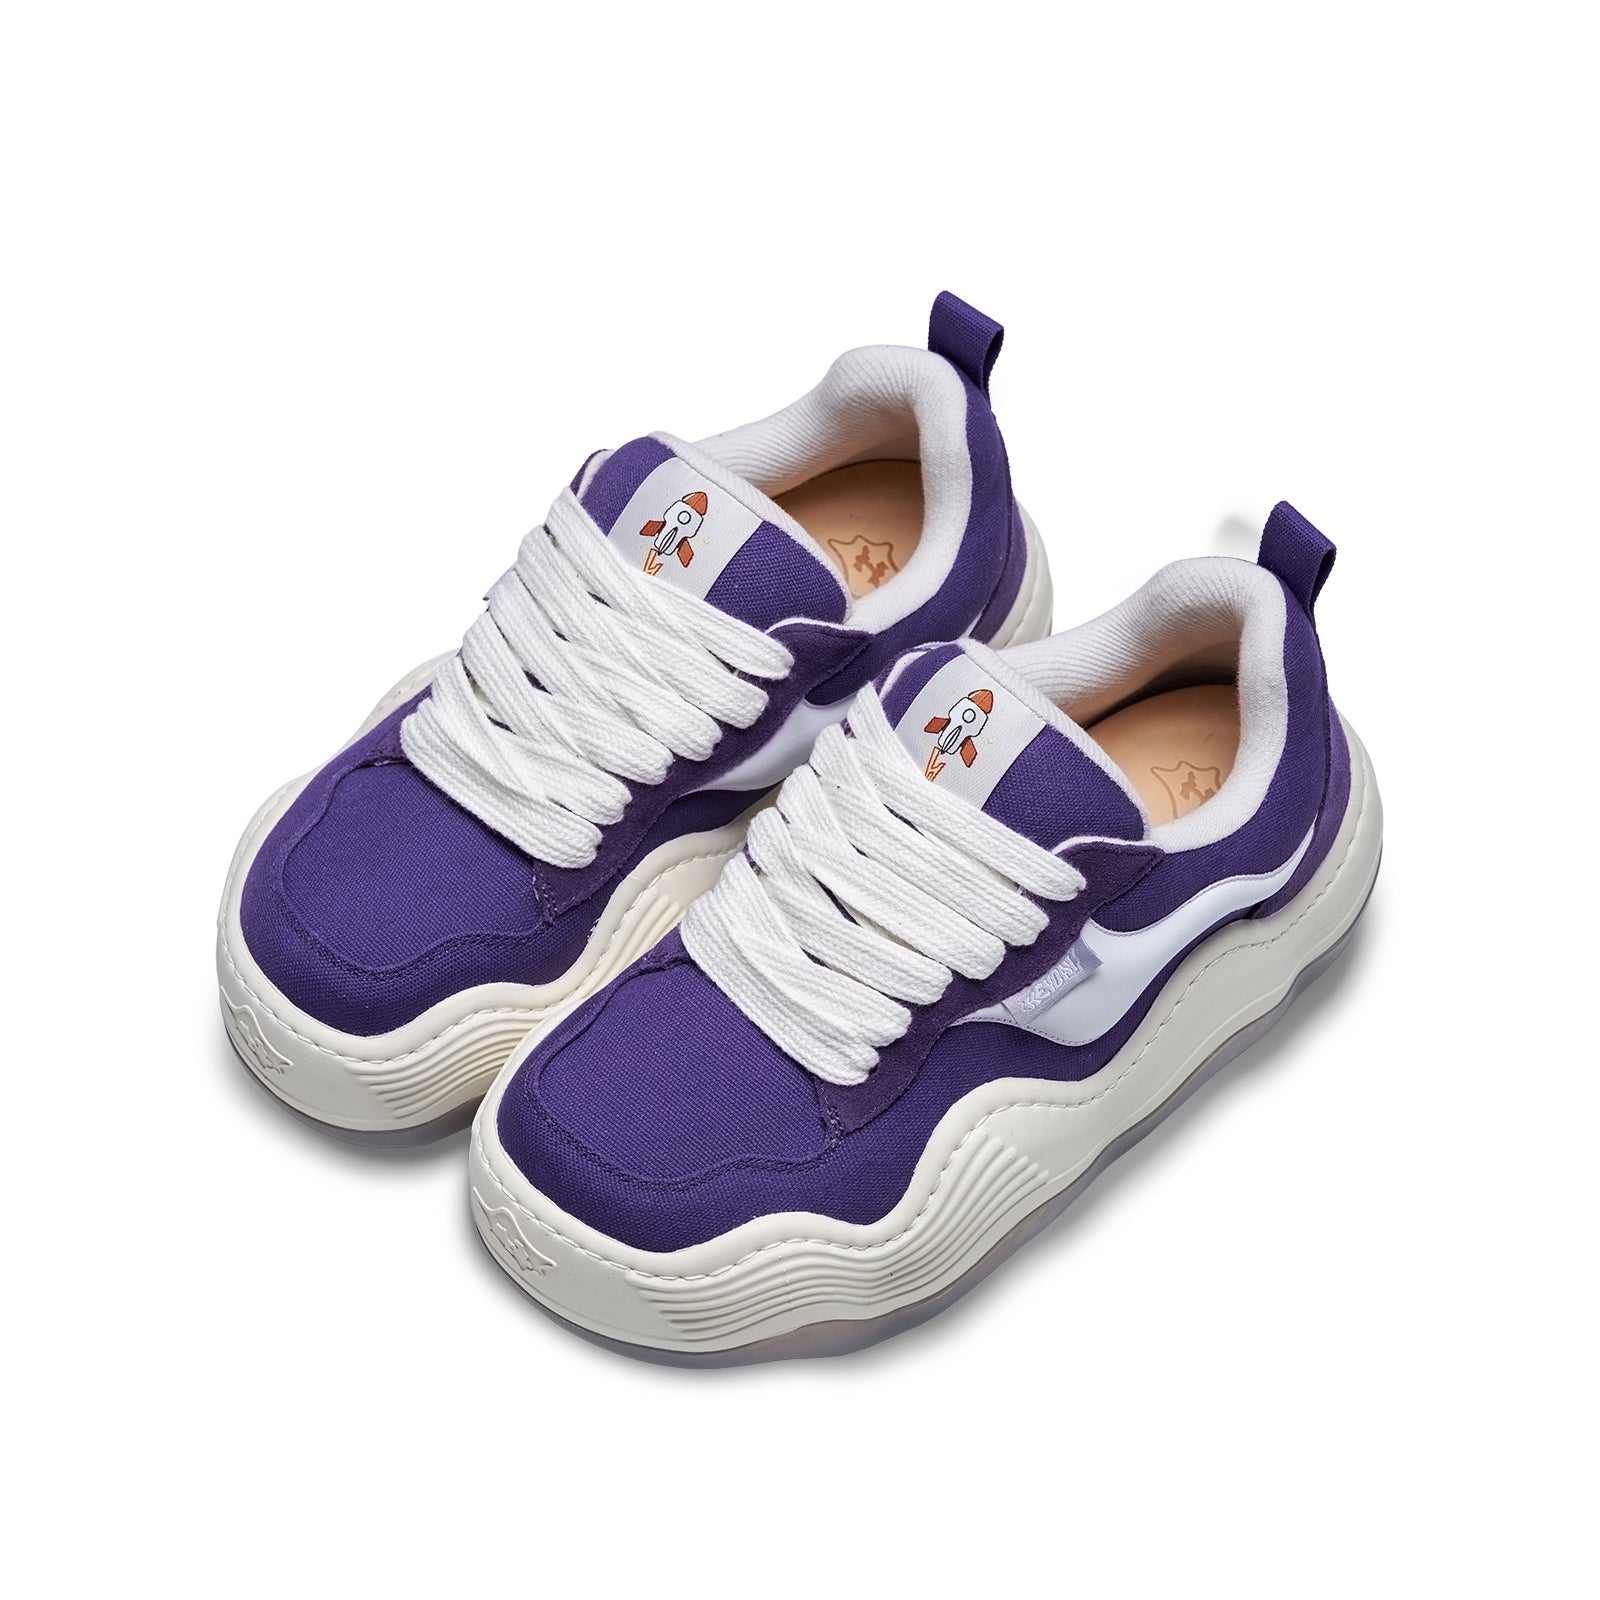 xHeyday Street Style Sneaker Triple Wavy Purple Rocket